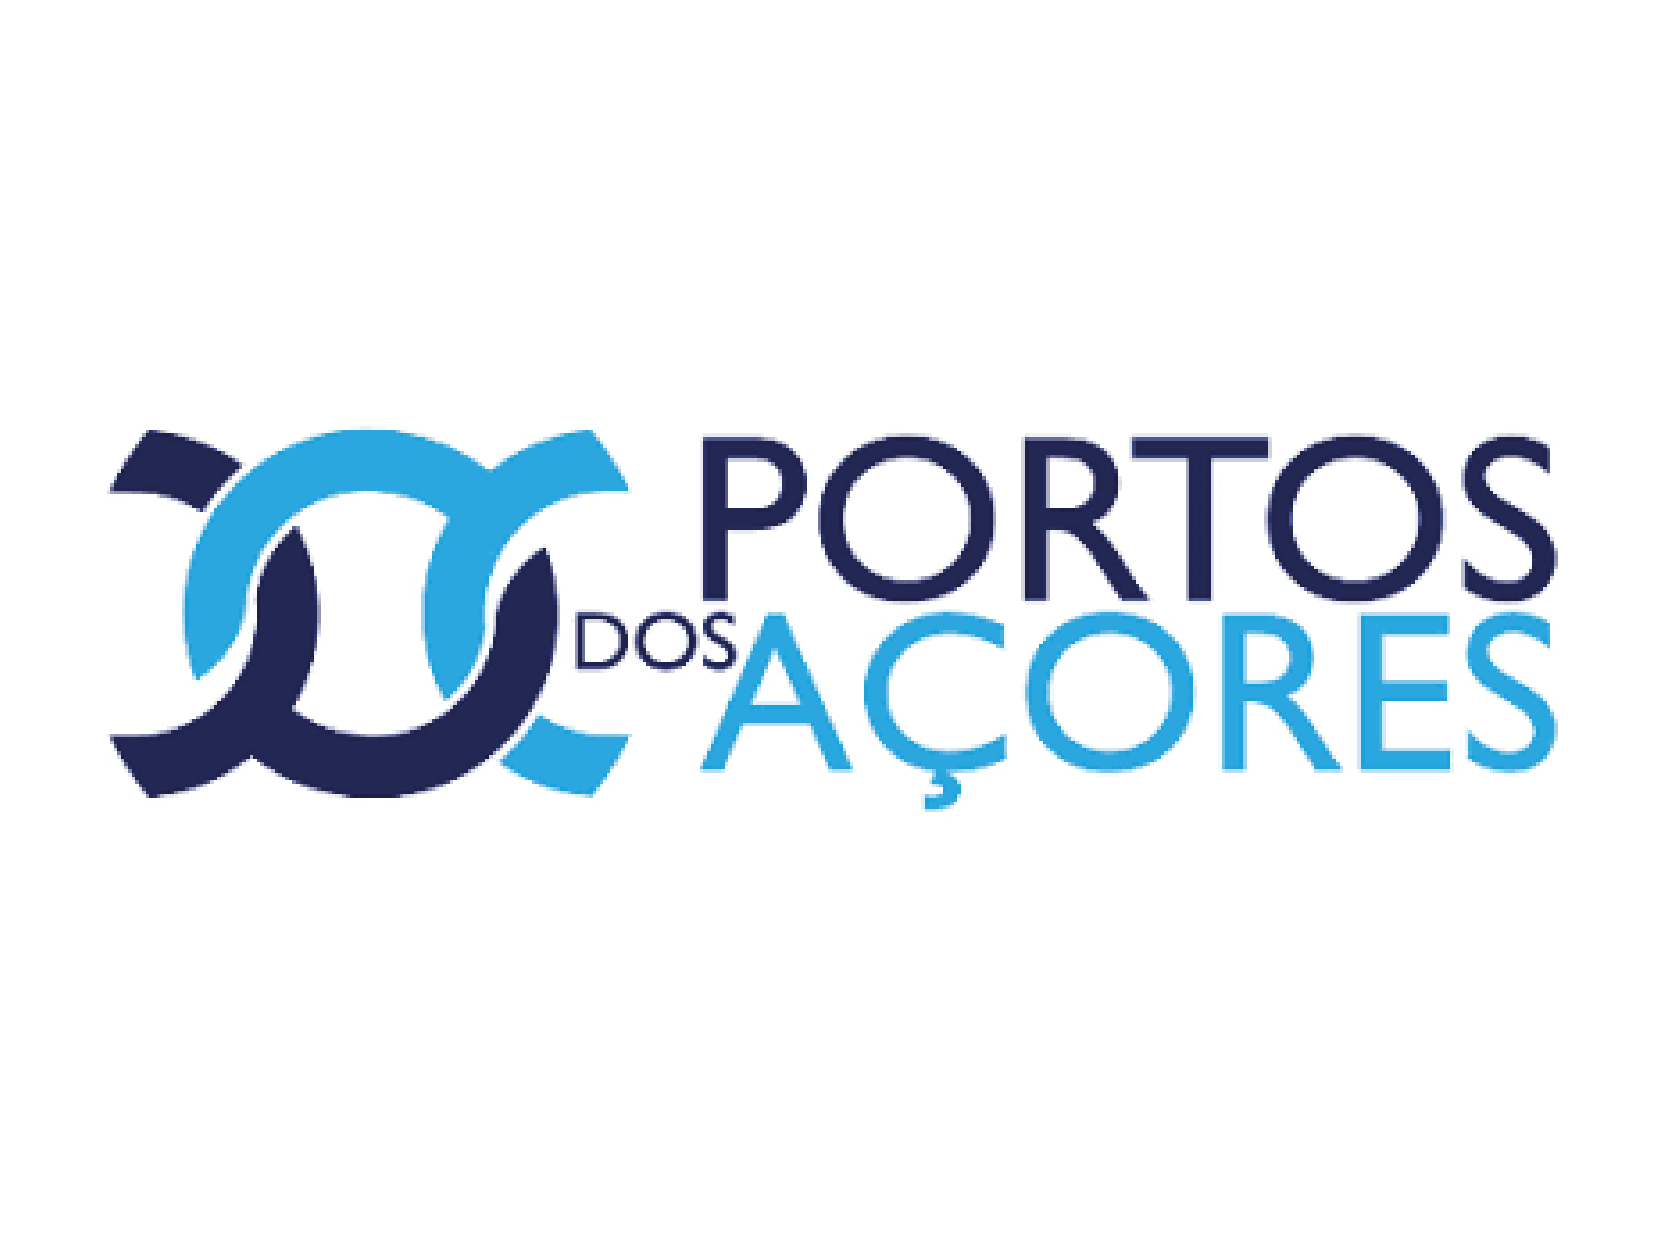 PORTOS DOS ACORES 01